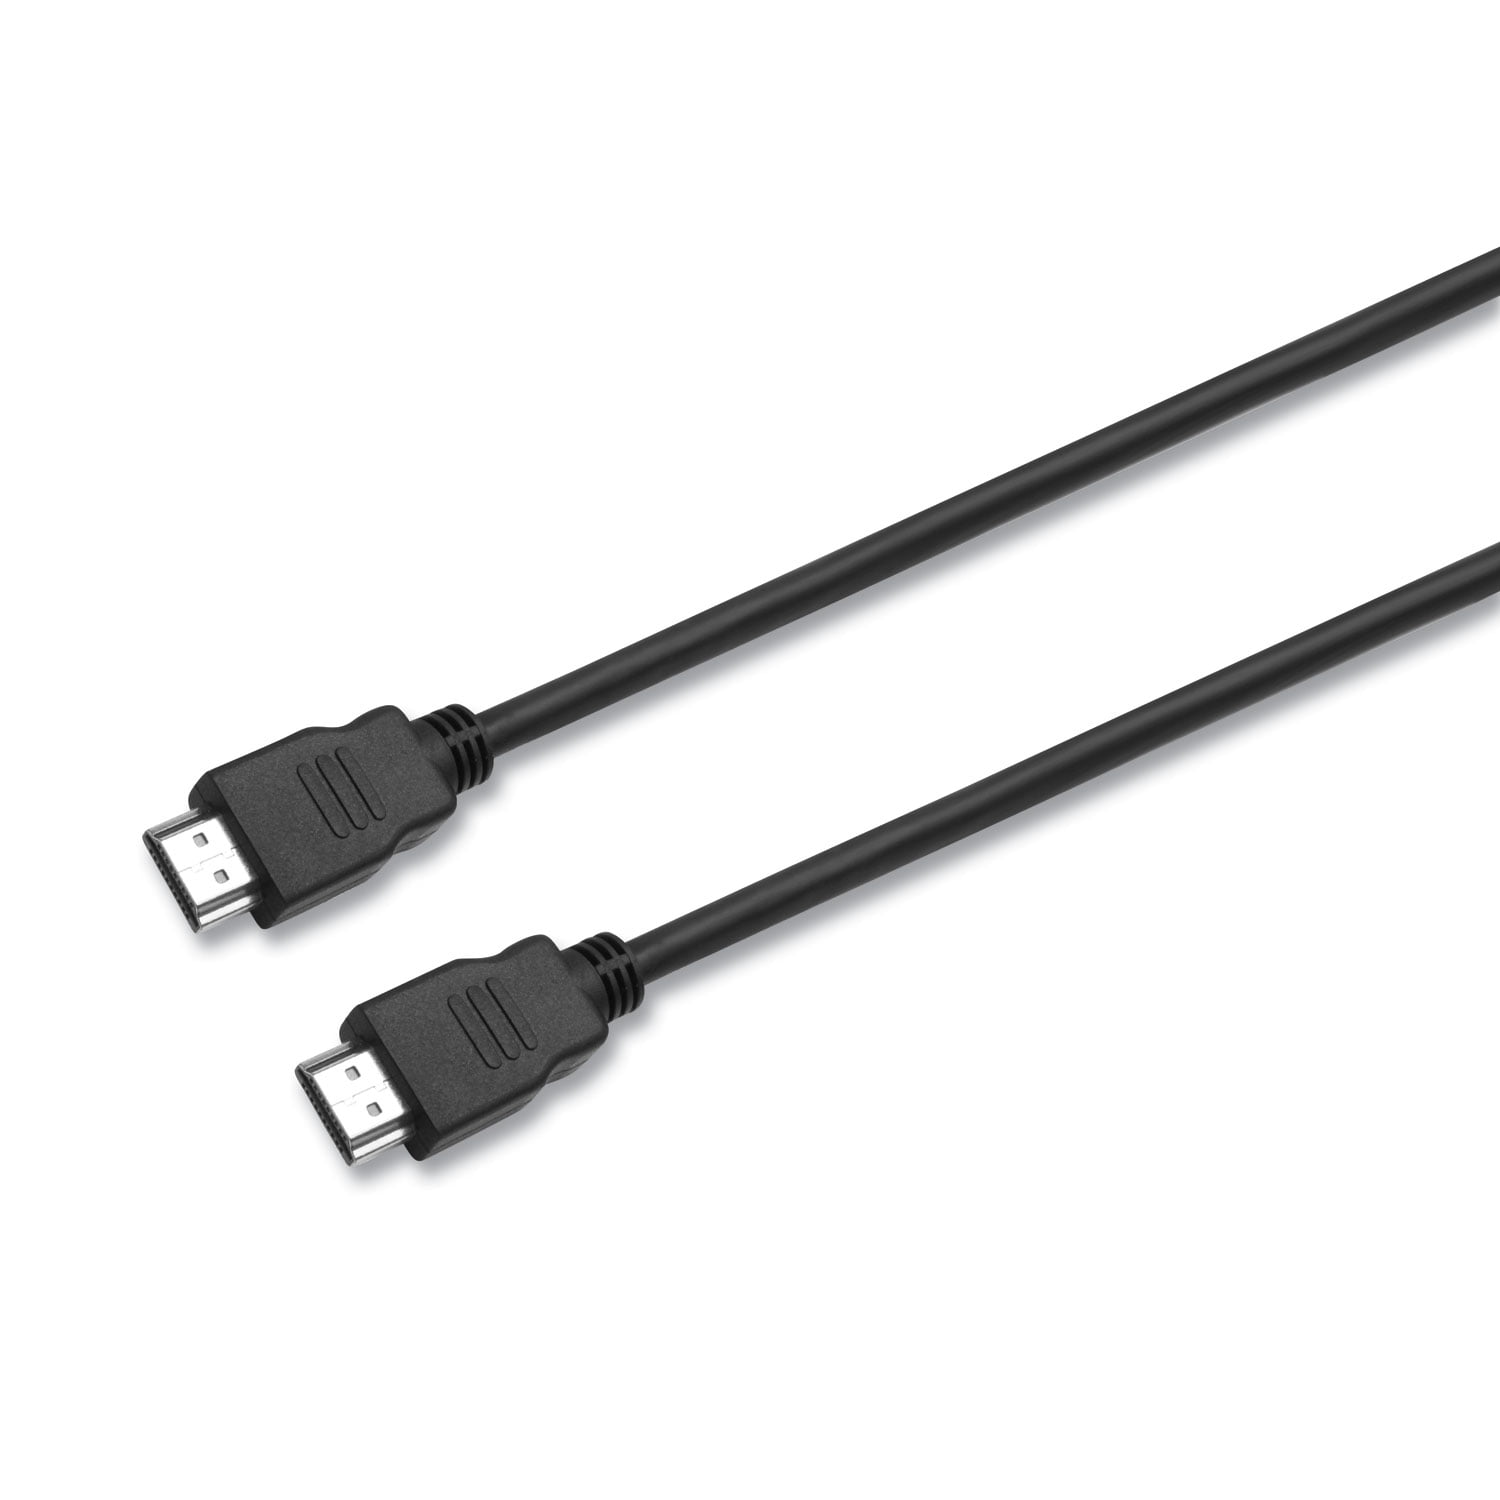 CABLE HDMI - HDMI 5METROS - Comprar en JS SOLUCIONES